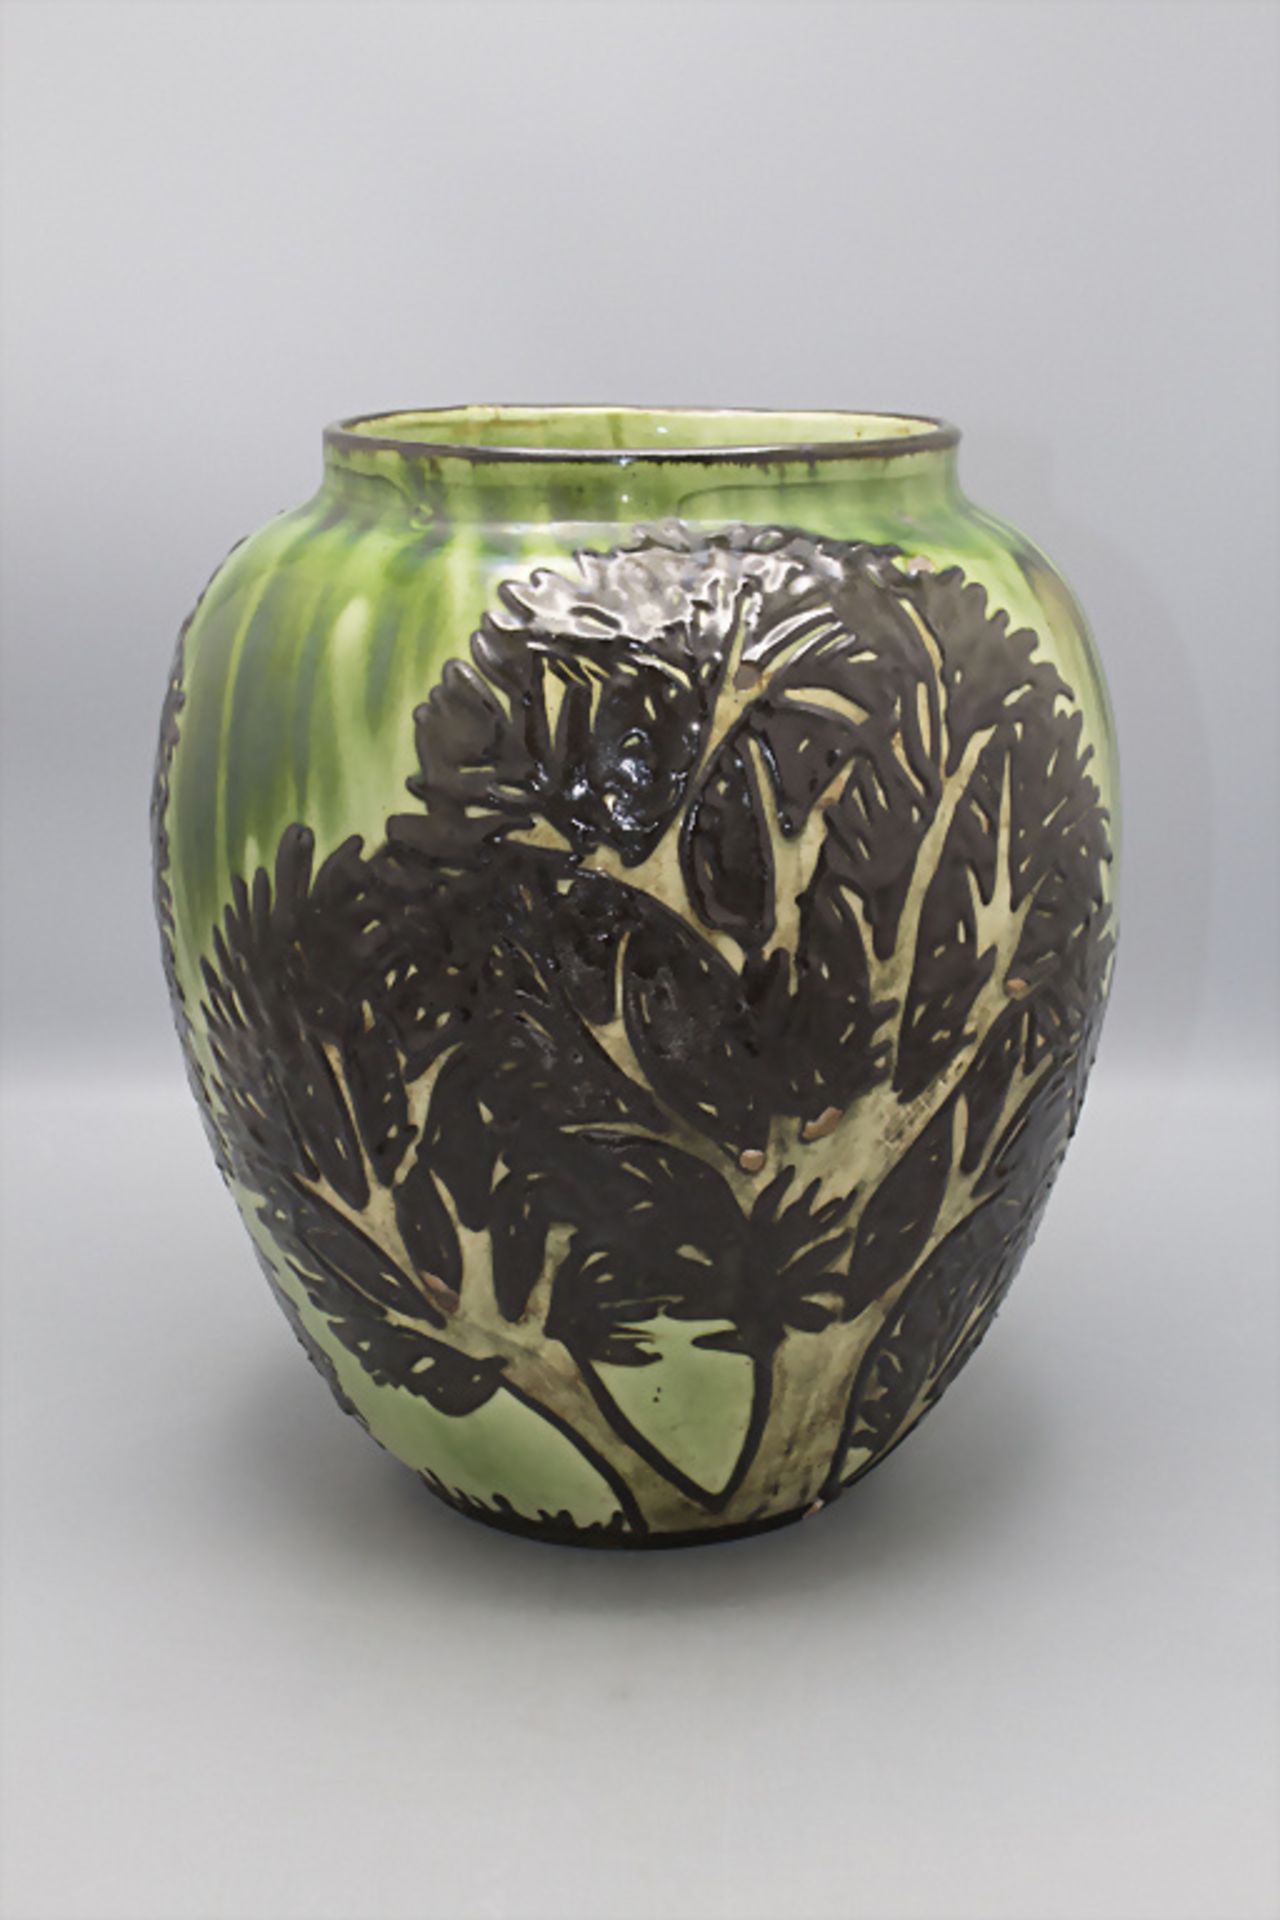 Jugendstil Majolika Vase 'Bäume' / An Art Nouveau majolica vase 'Trees', Max Laeuger, ... - Bild 5 aus 6